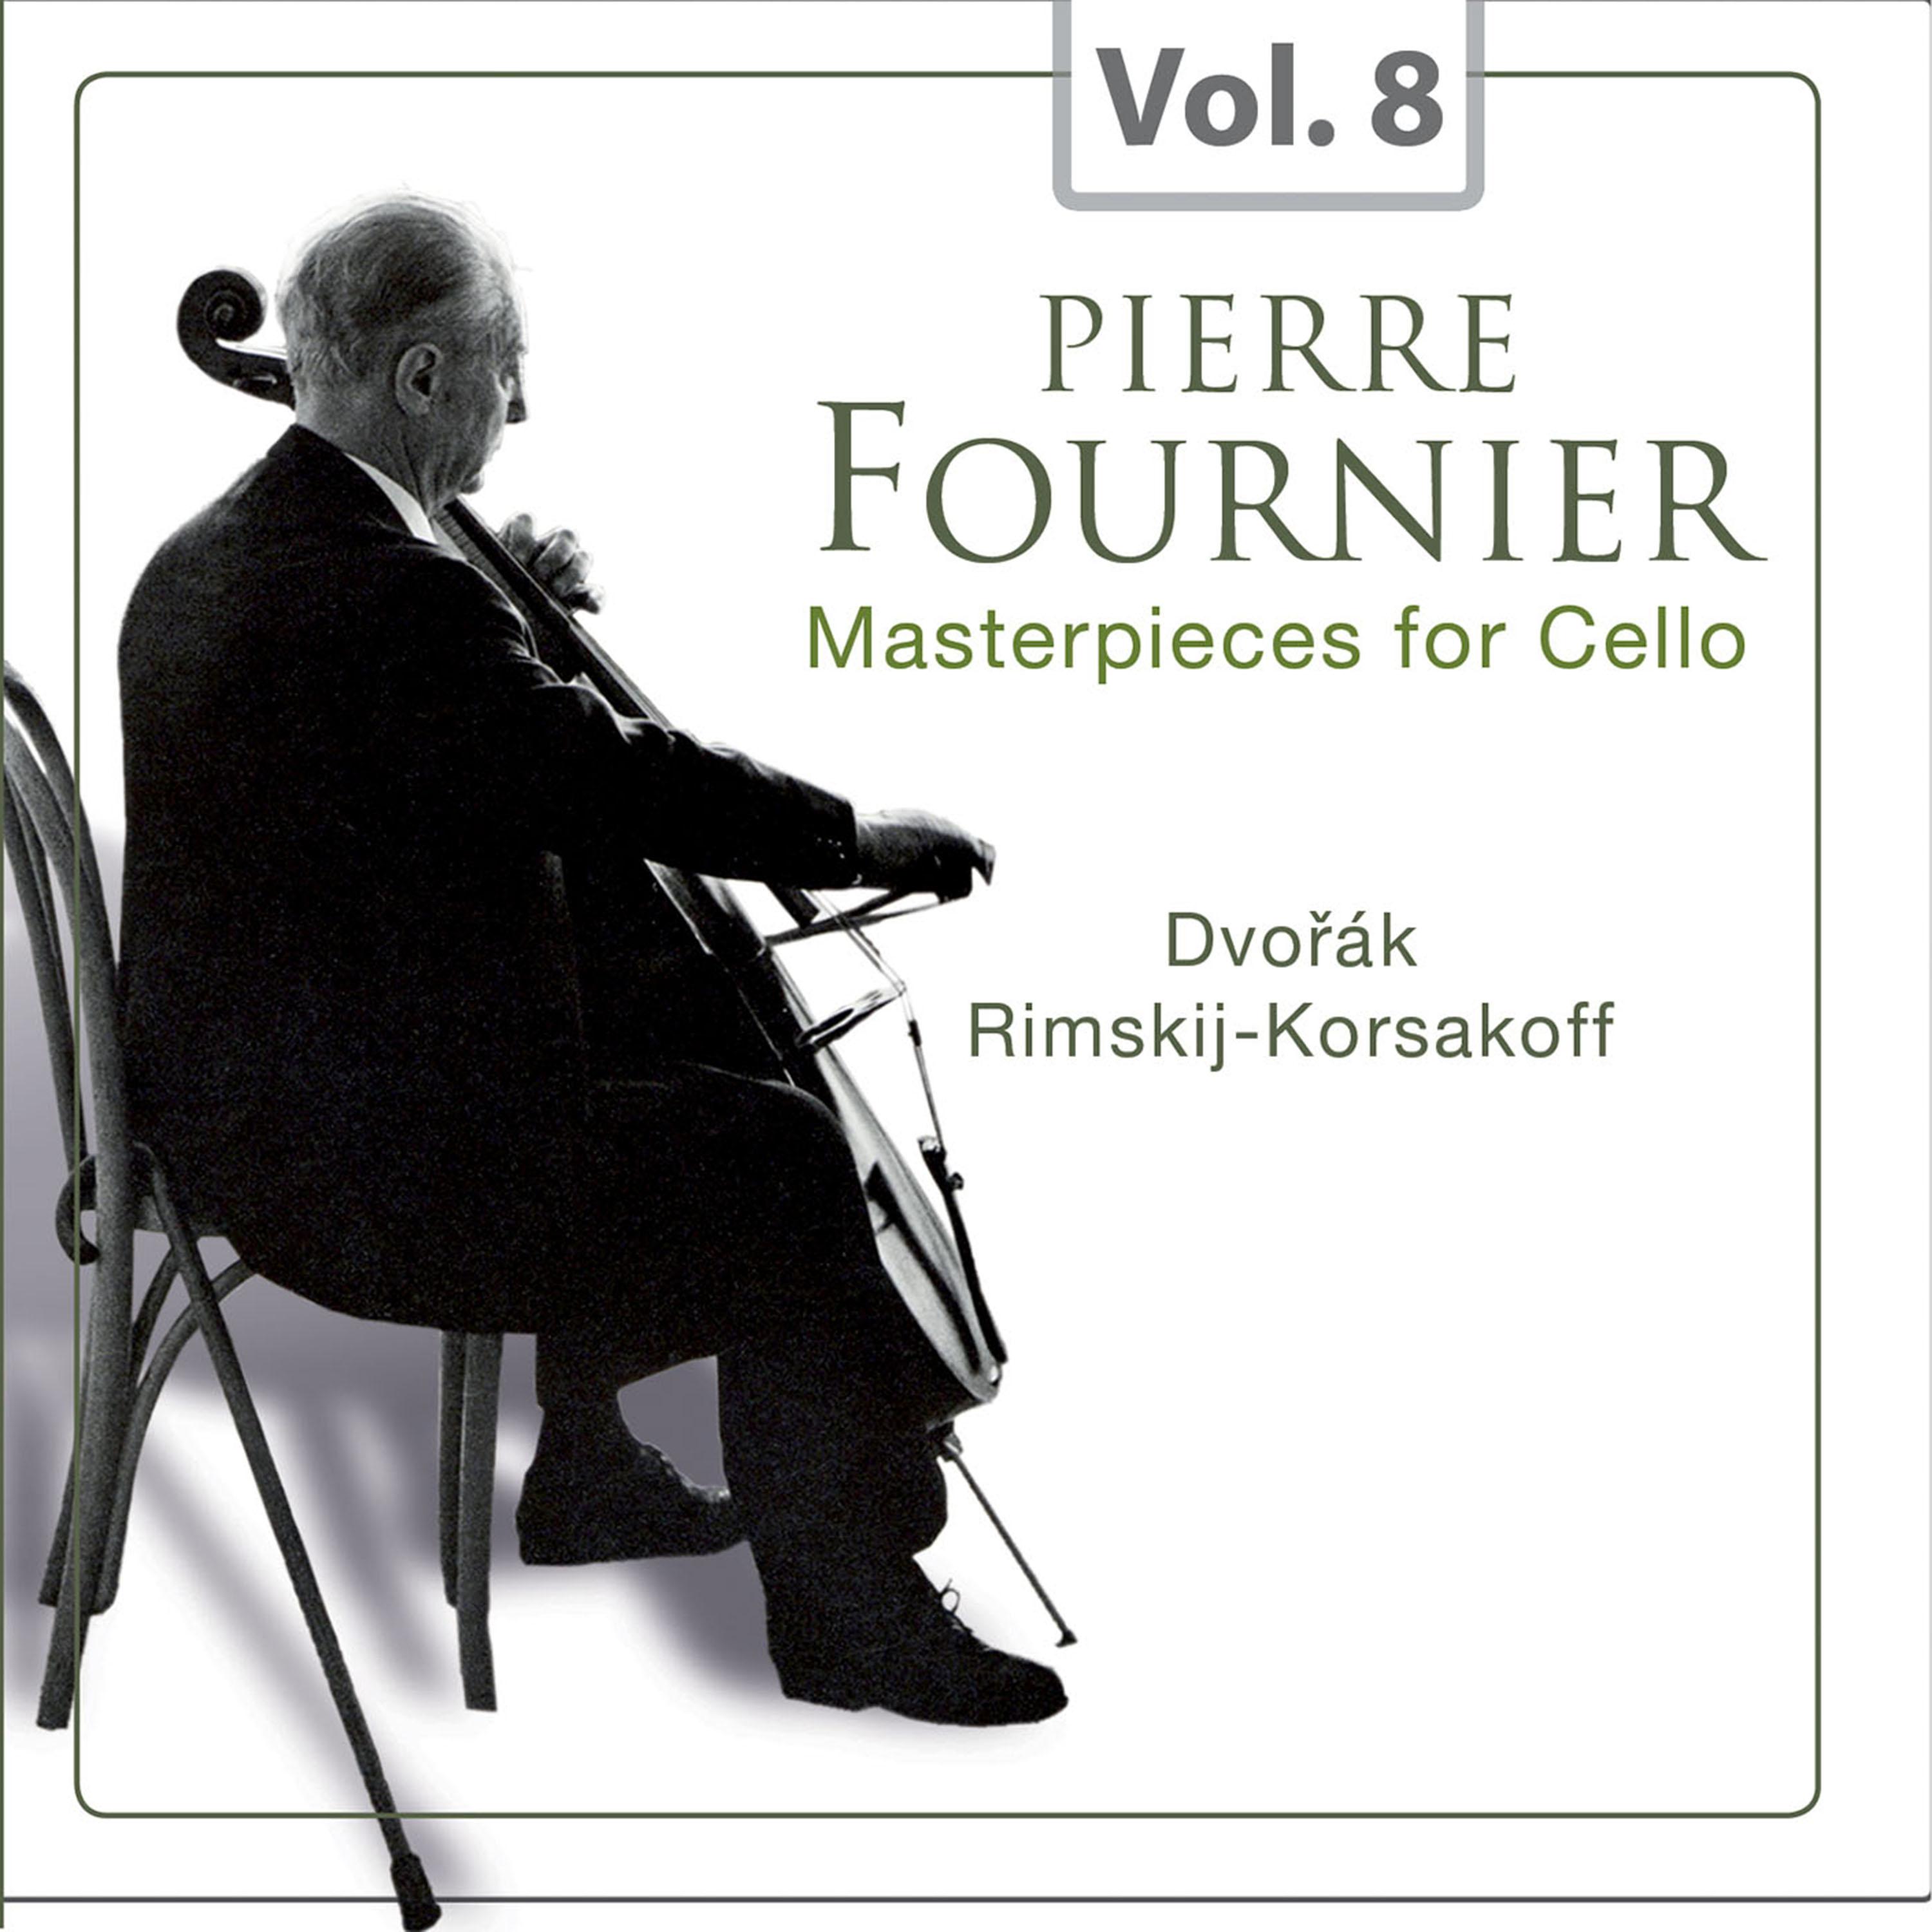 Masterpieces for Cello, Vol. 8